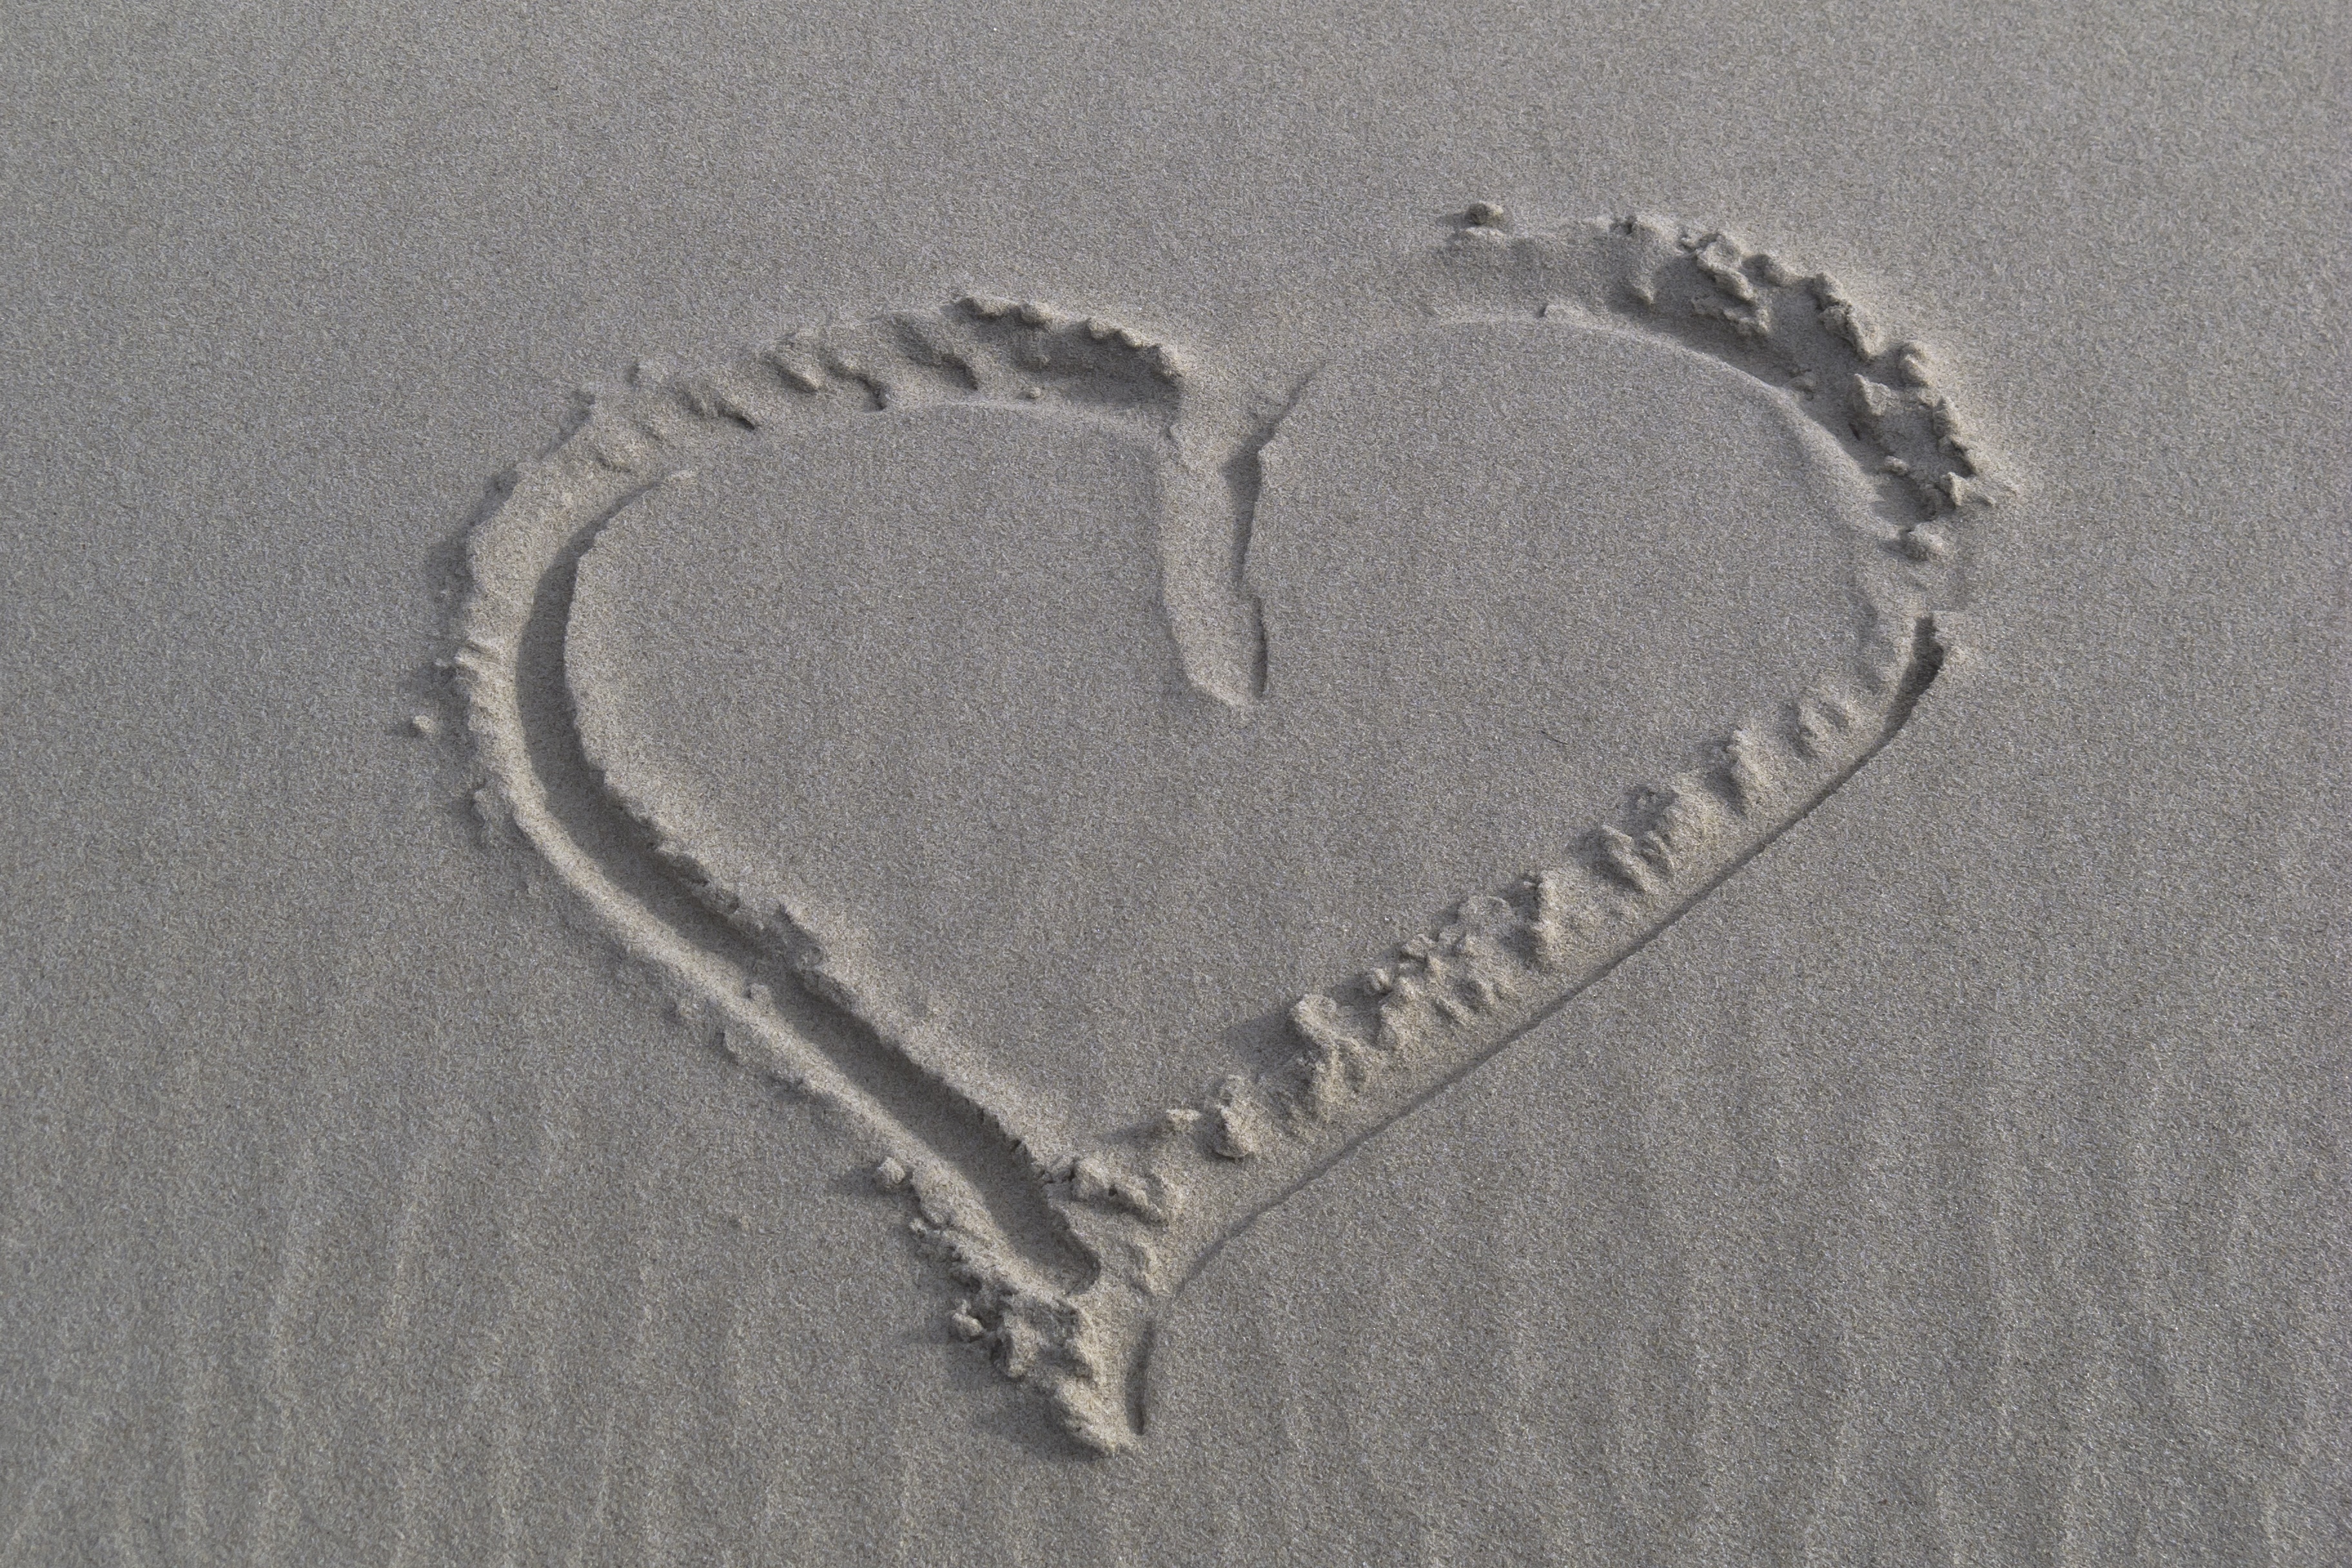 heart sand art